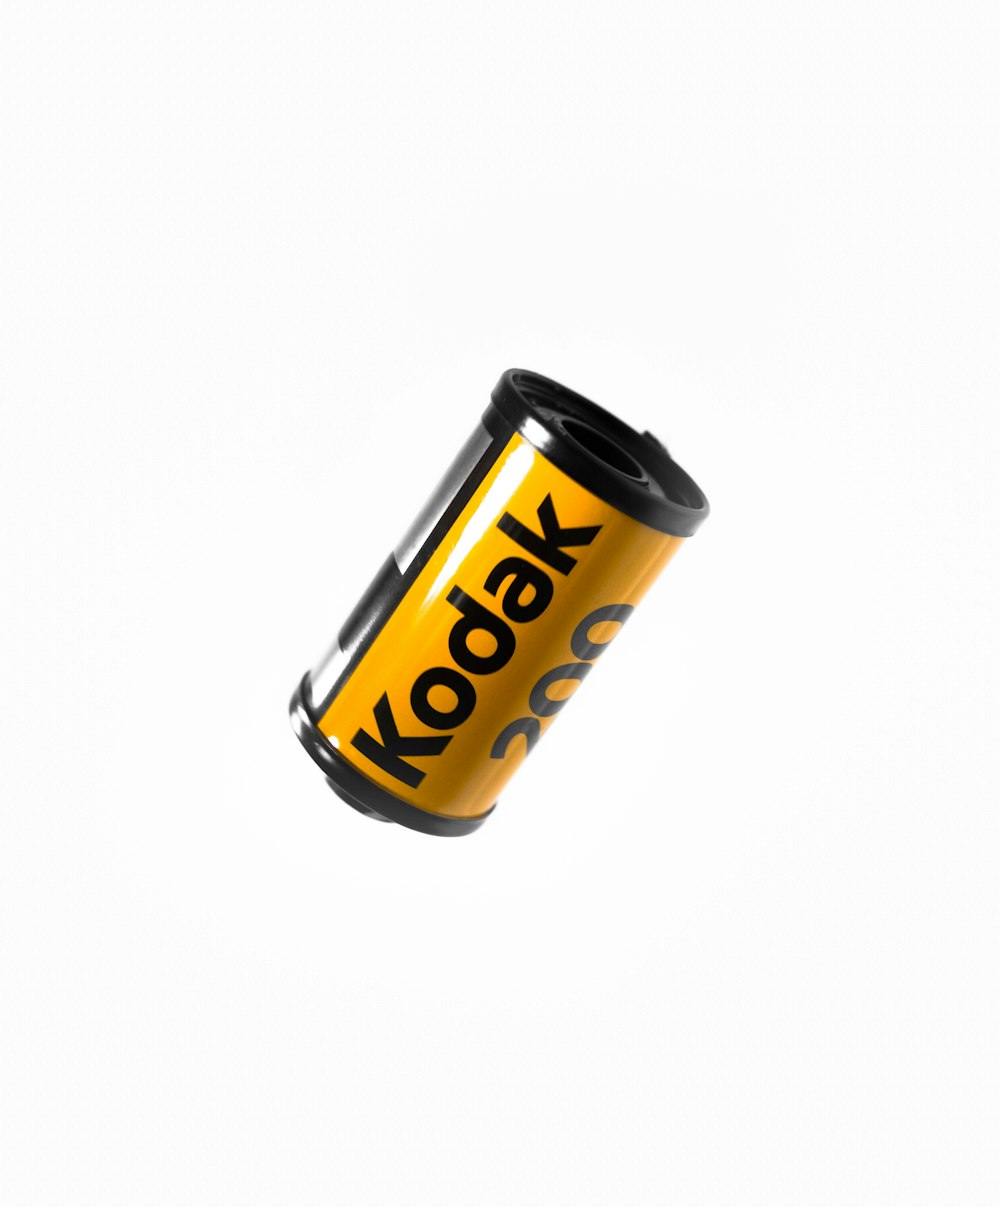 película de la cámara Kodak